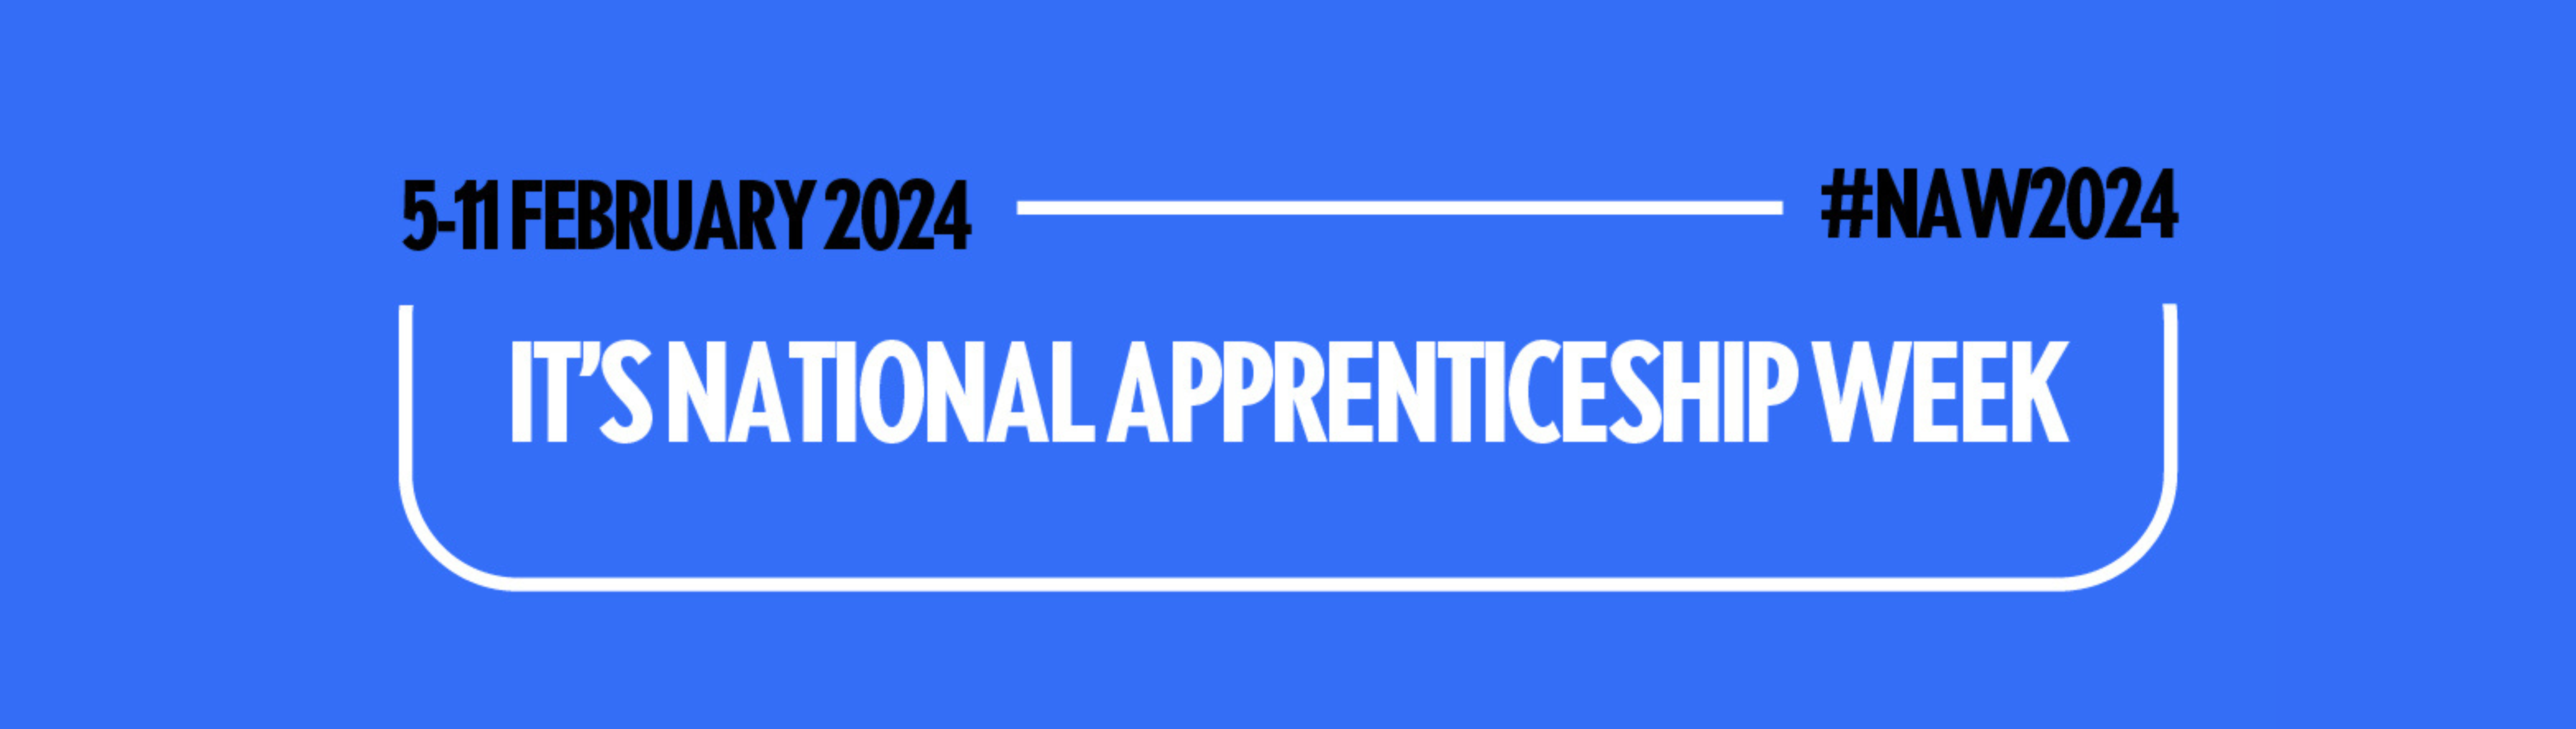 National Apprenticeship Week banner